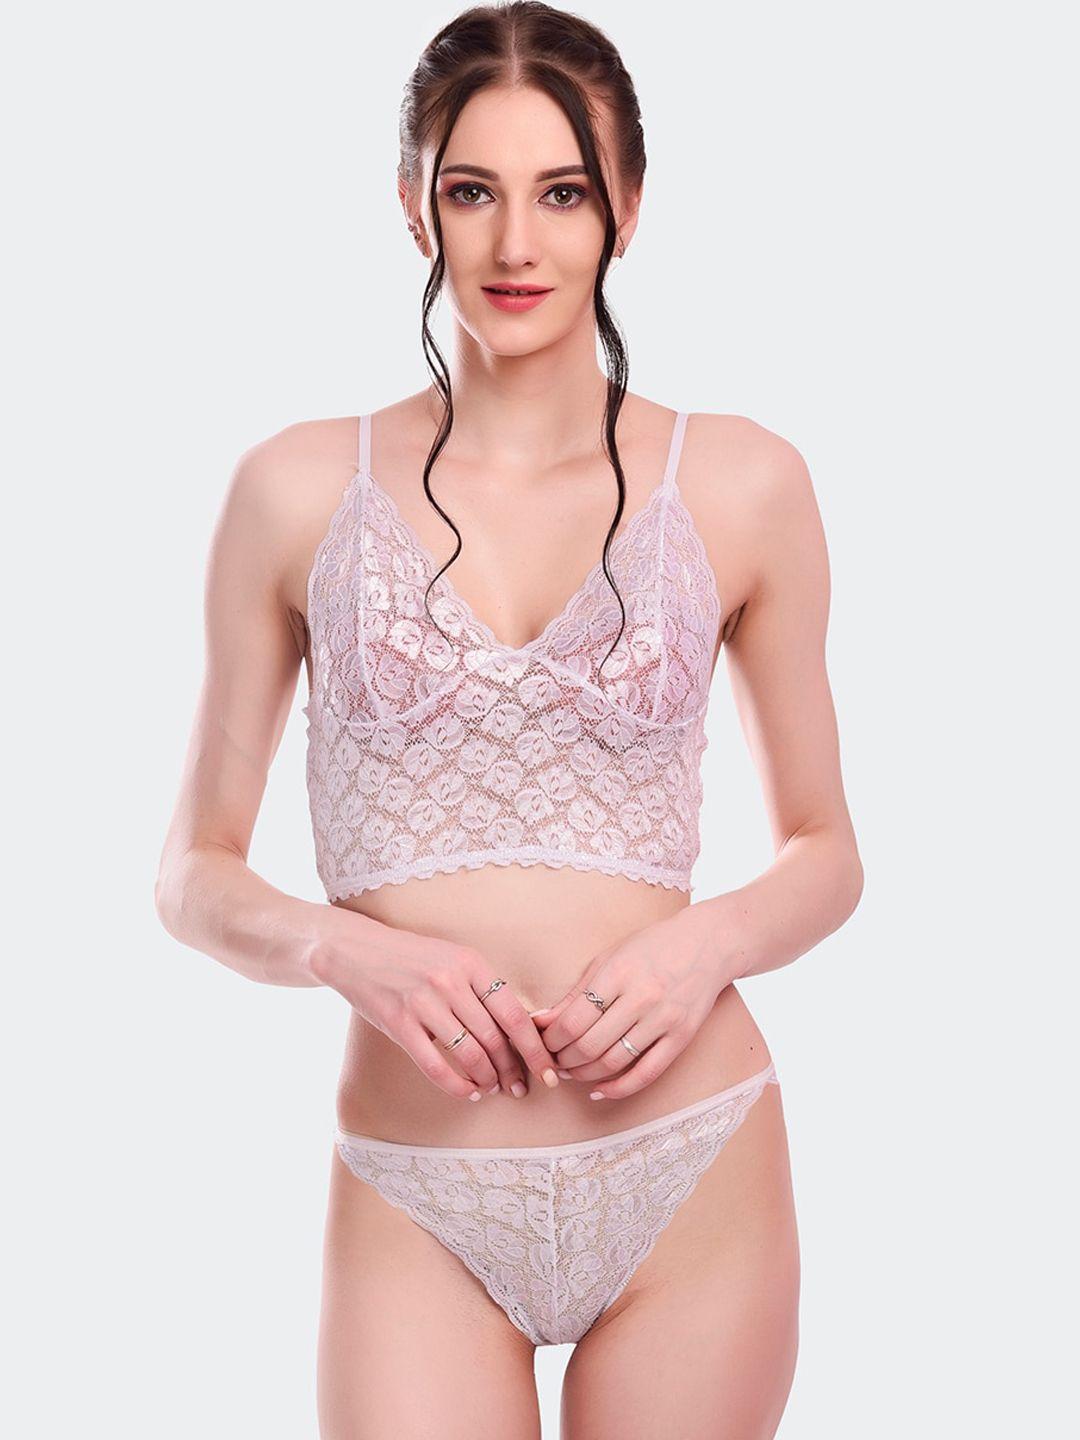 fleurt women white self-design lace lingerie set fleurt-set-170-new-wh-l